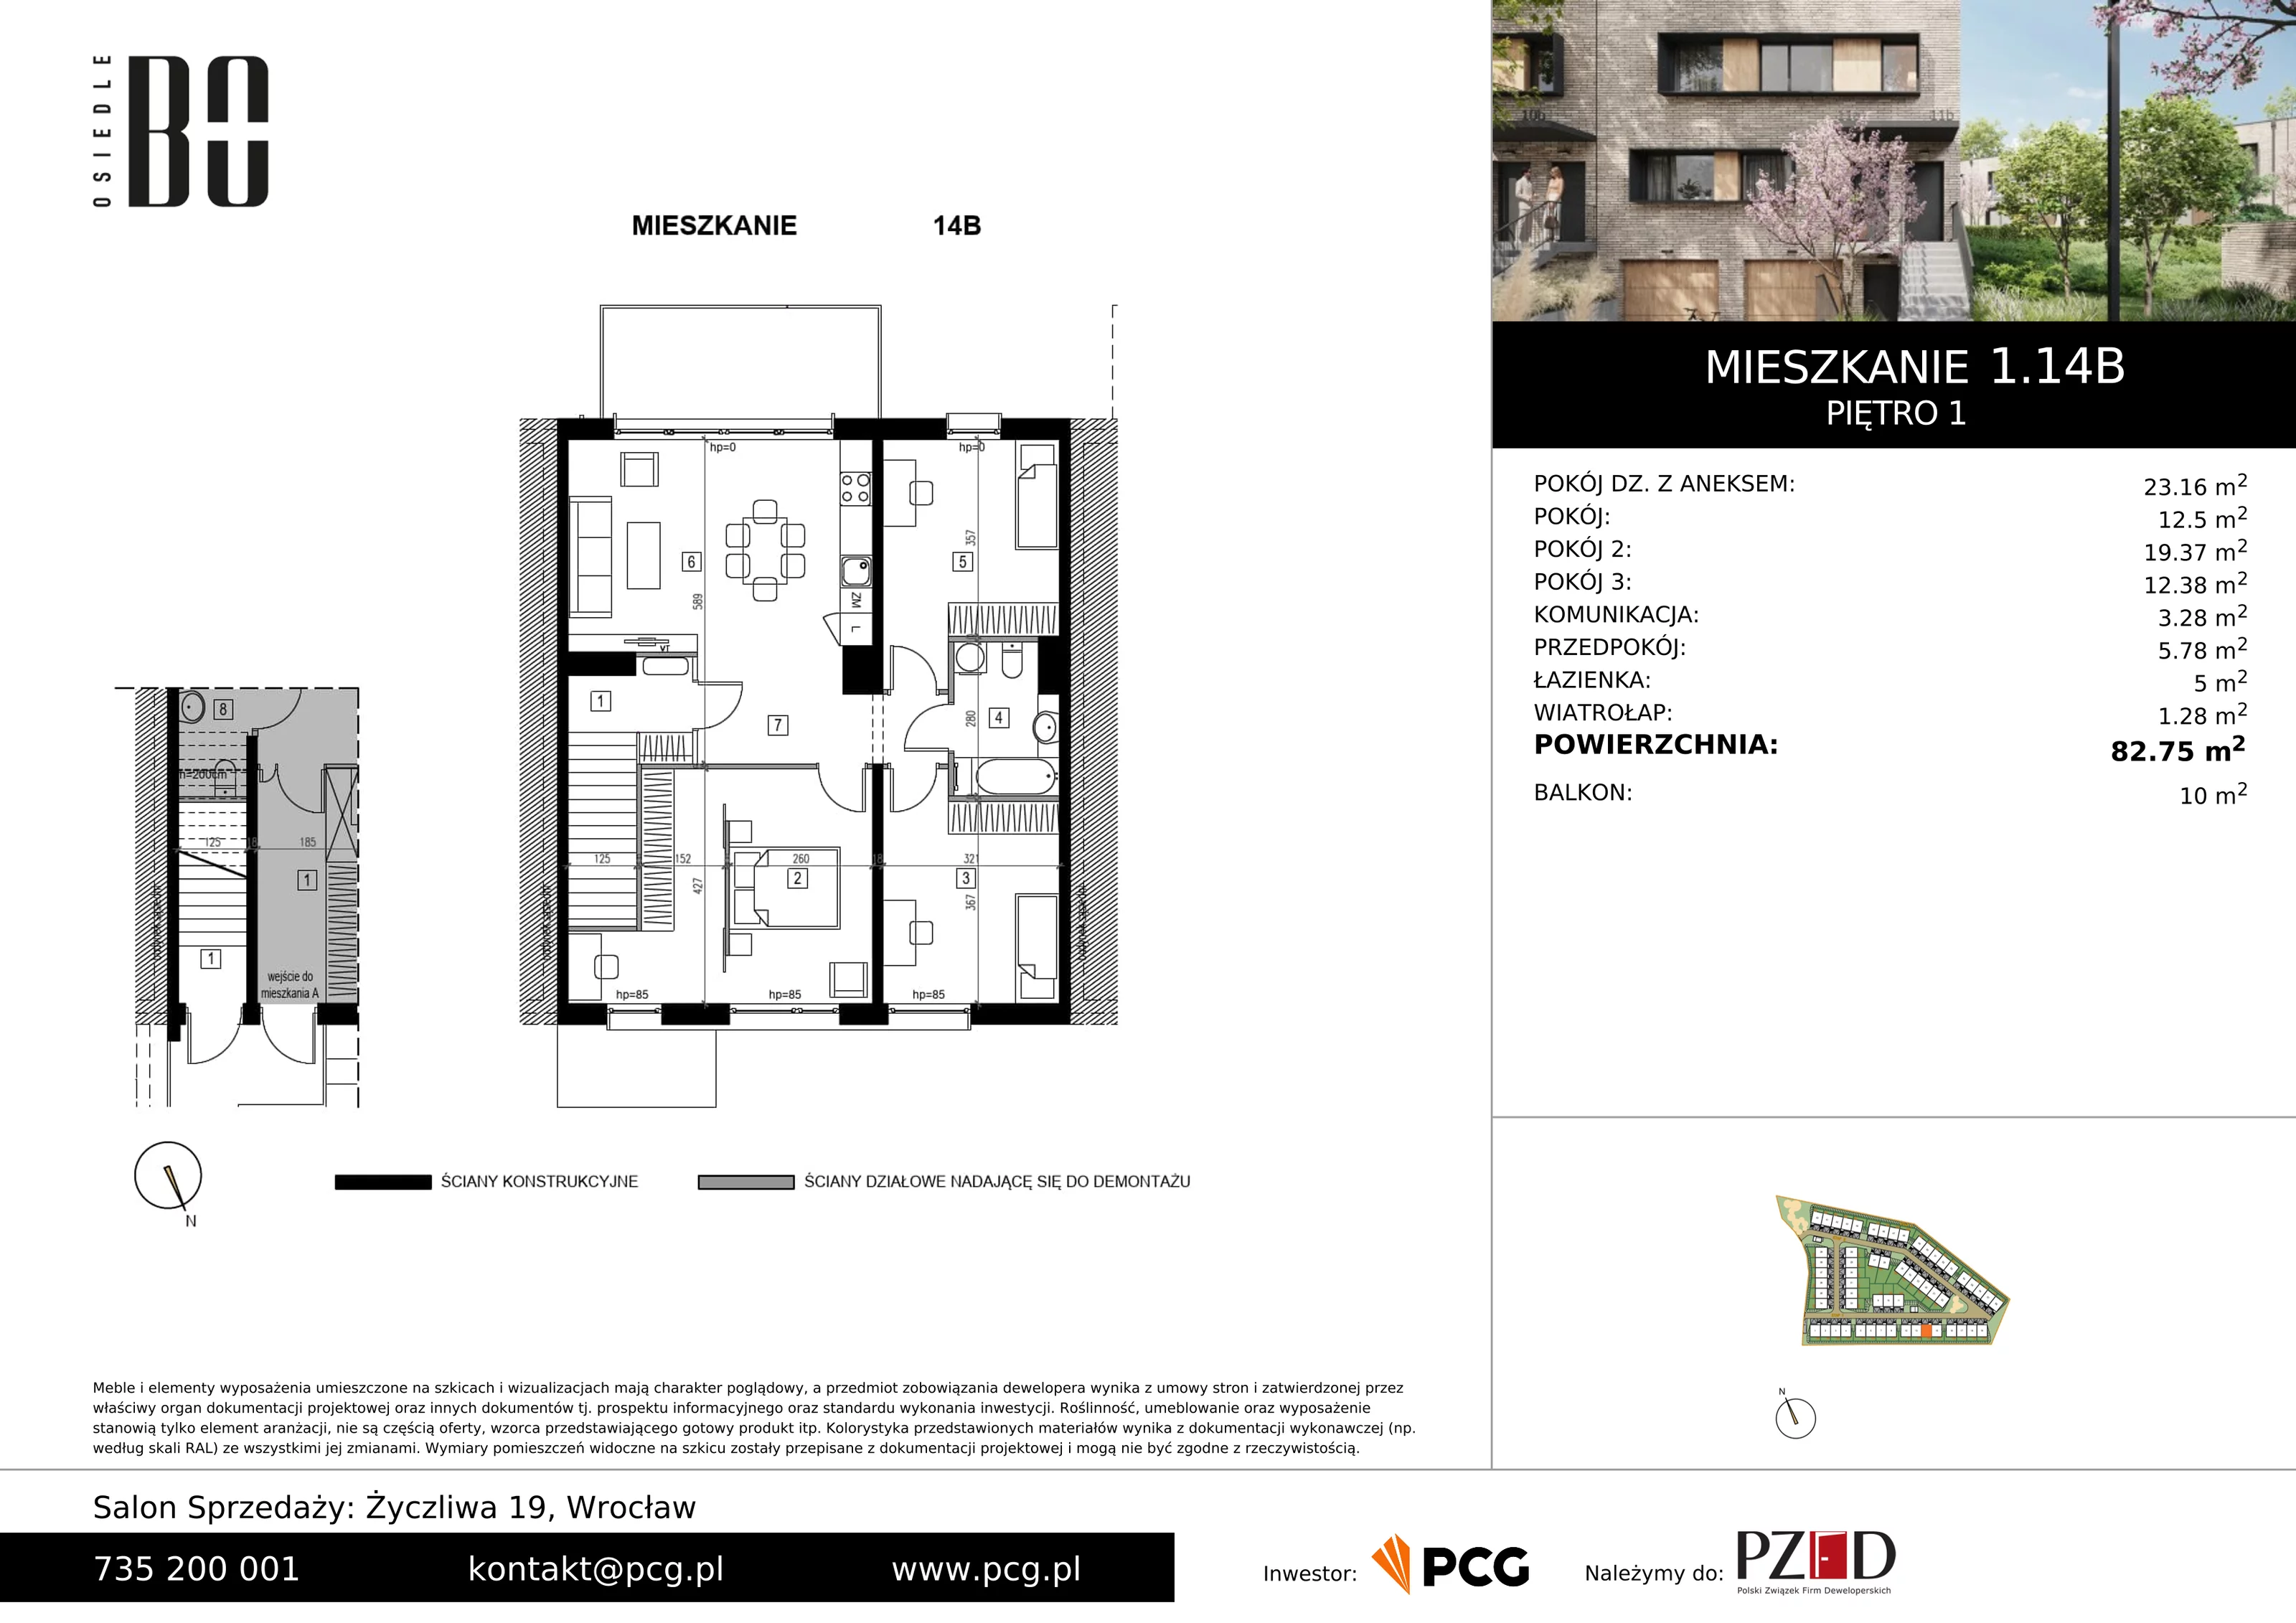 Apartament 82,75 m², piętro 1, oferta nr 1.14B, Osiedle BO, Wrocław, Kowale, ul. Bociana